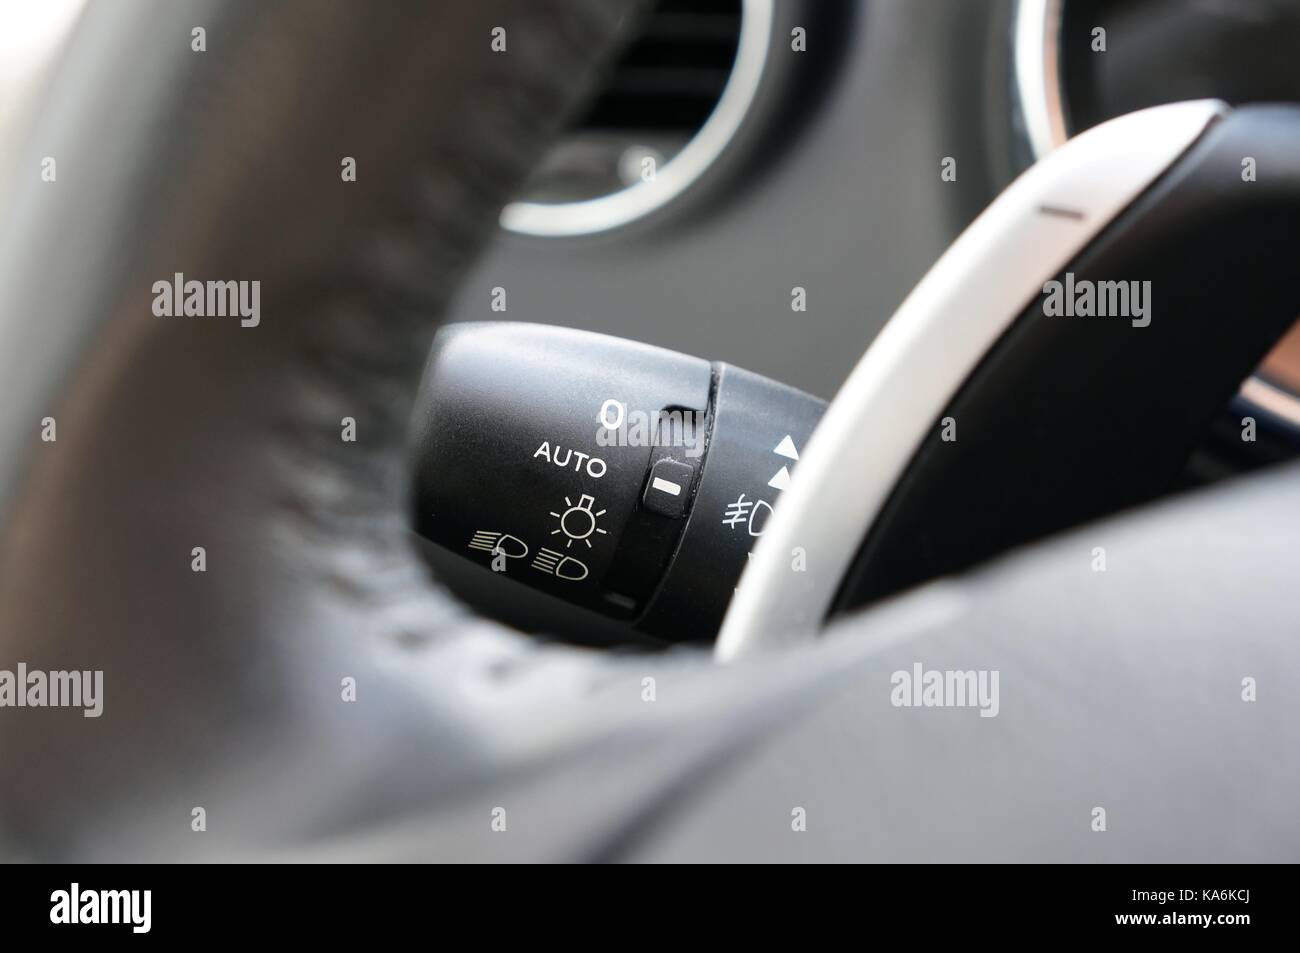 interior del coche con interruptor de luz 7183459 Foto de stock en Vecteezy